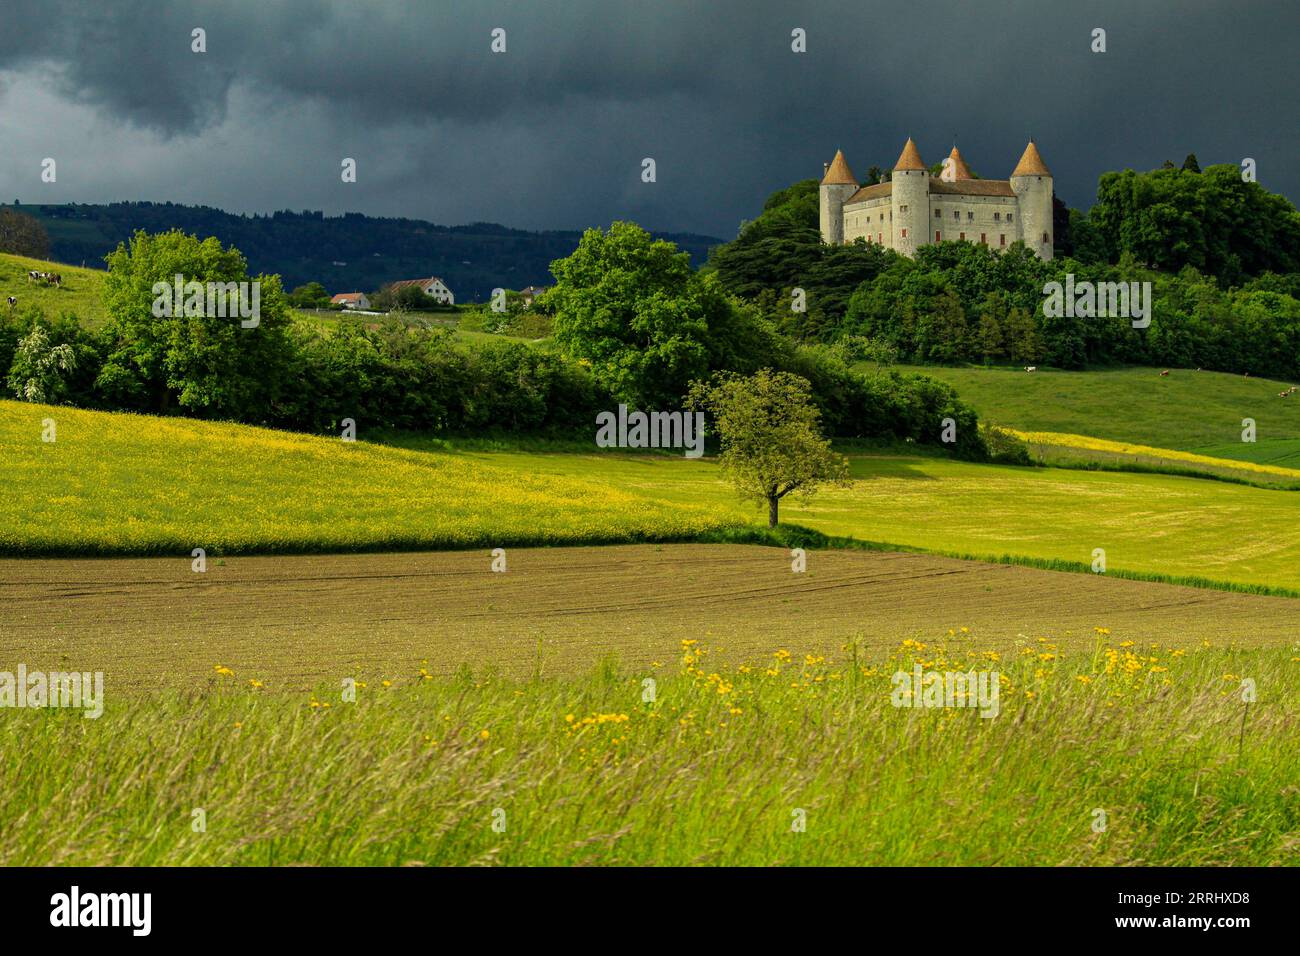 Le château de Champvent au pied du jura vaudois en Suisse Stock Photo